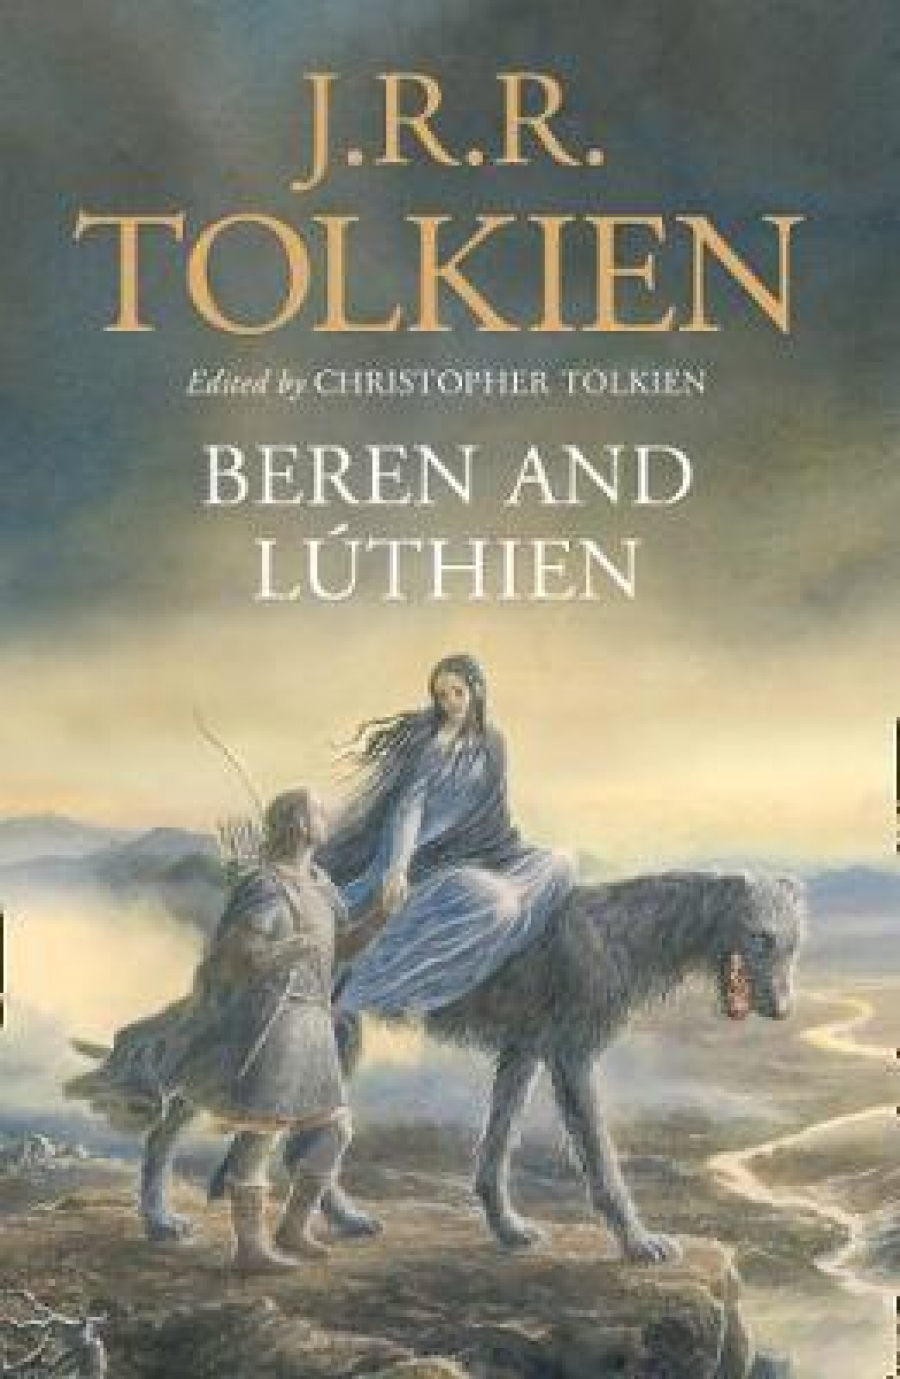 Tolkien, J. R. R. Beren and luthien 